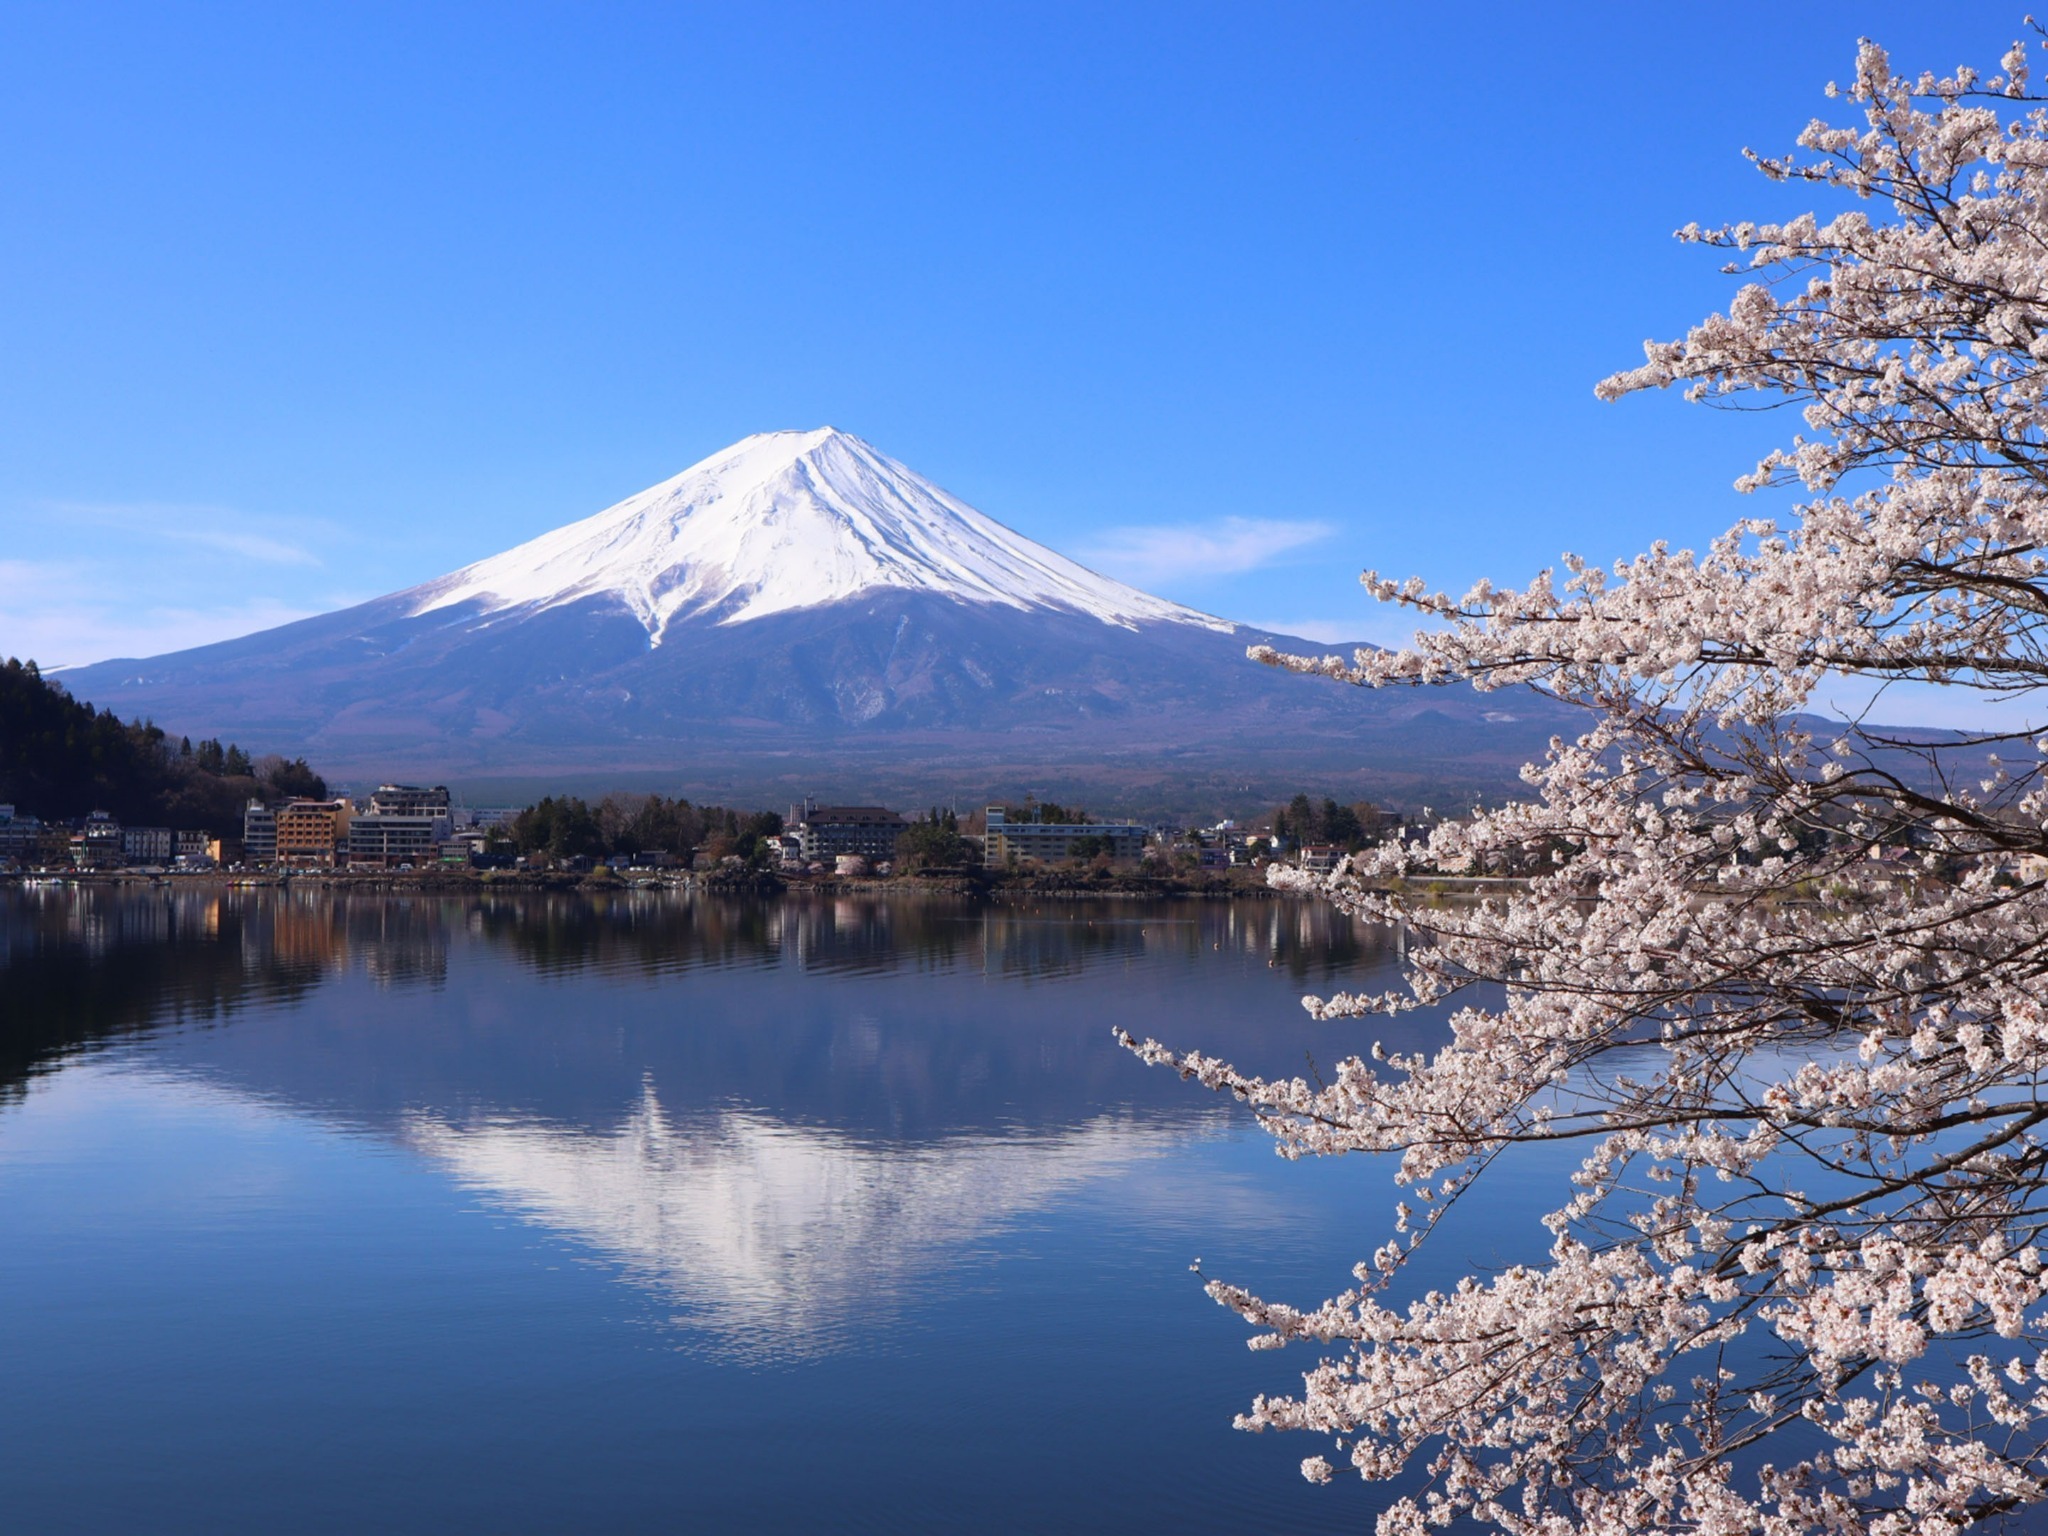 残雪の富士山を背景に、桜並木を楽しめる河口湖スポットも!